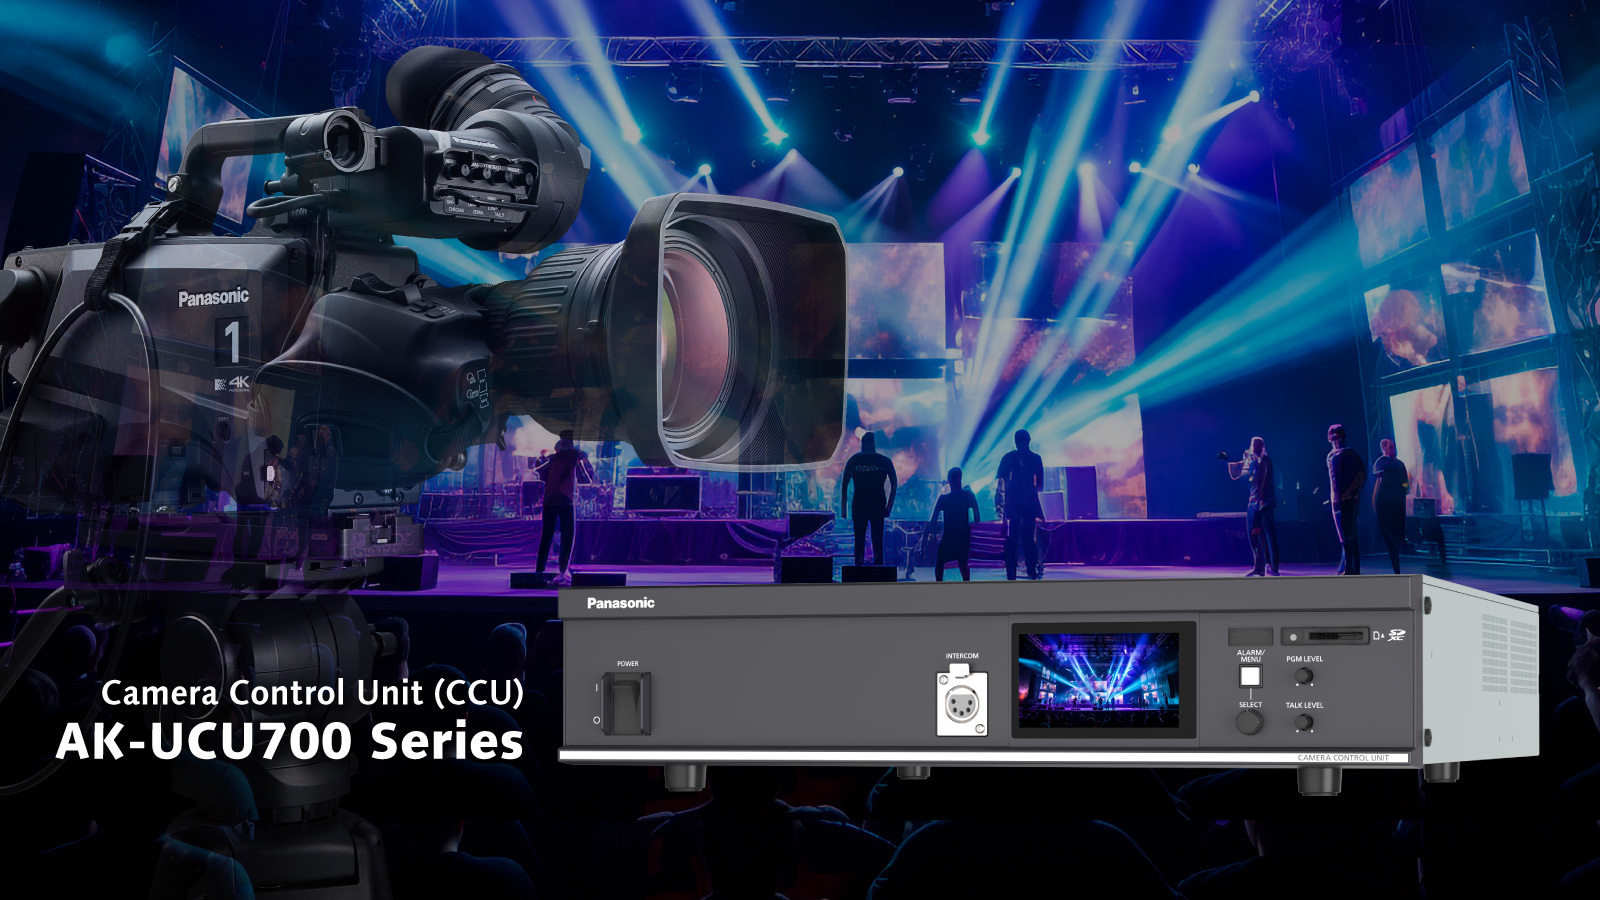 image: Camera Control Unit (CCU) AK-UCU700 Series